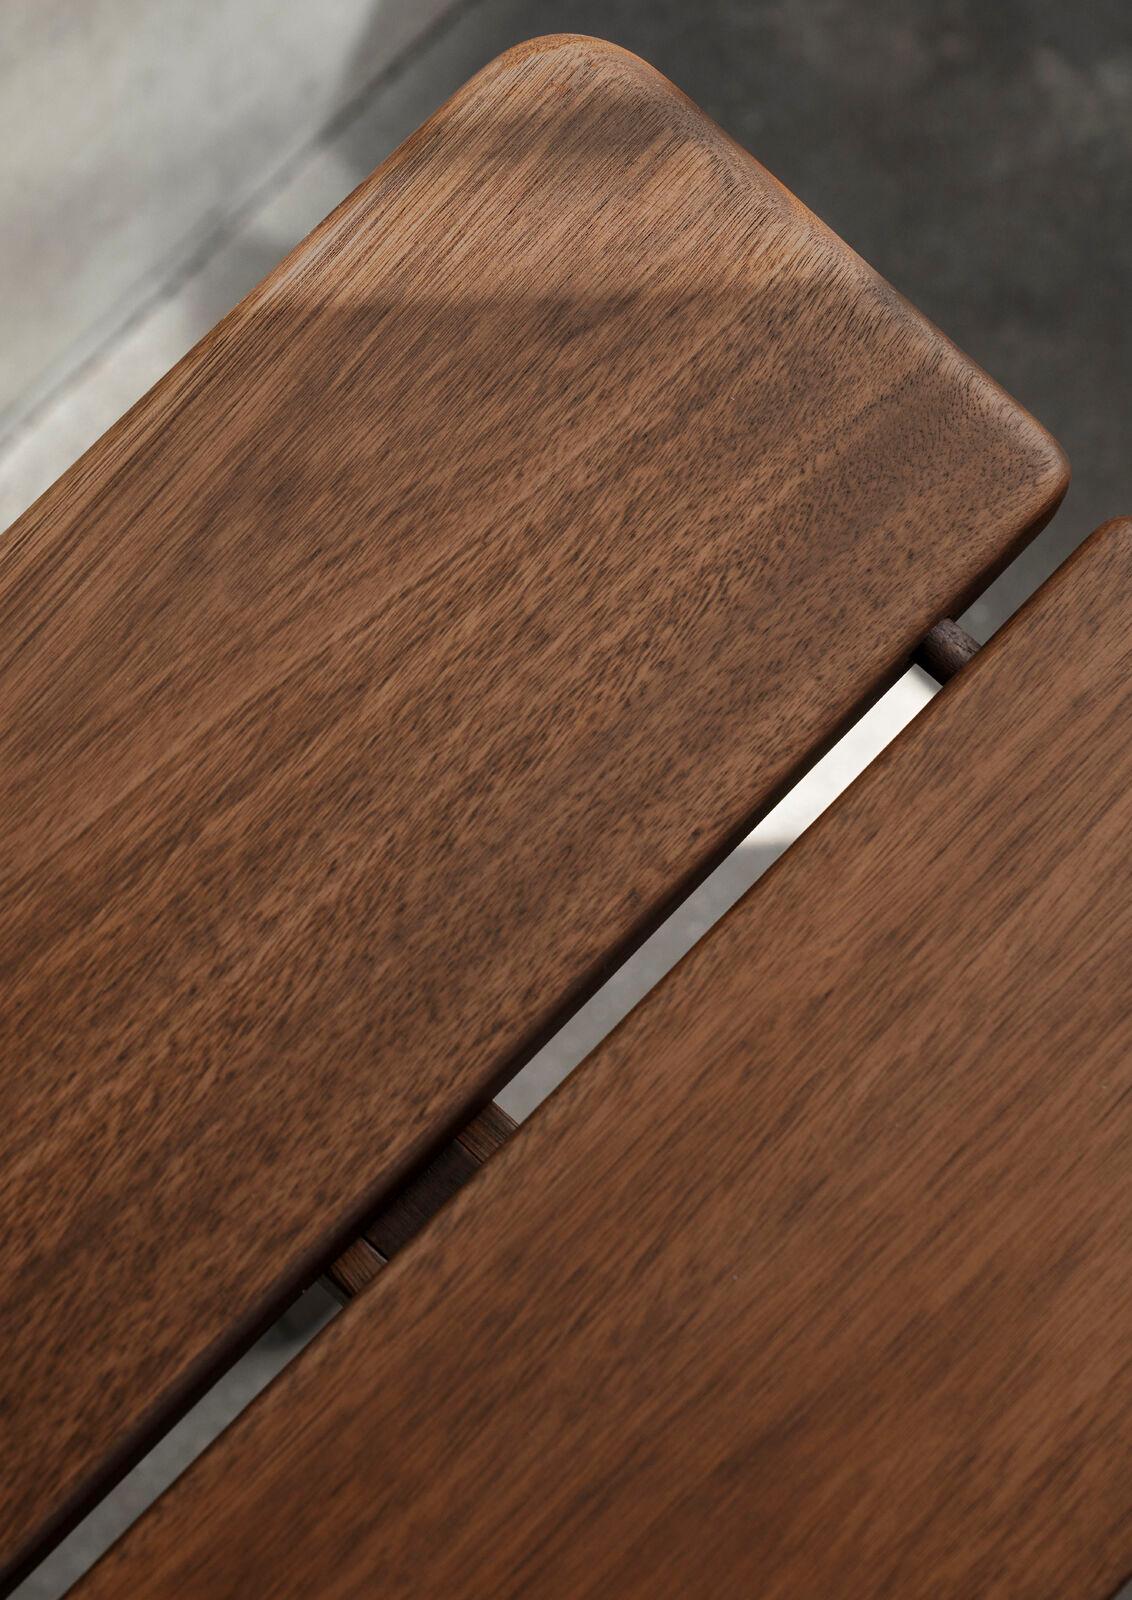 Die Asserbo Bench von Børge Mogensen ist ein hervorragendes Beispiel für Design, bei dem der Mensch im Mittelpunkt steht. Sie demonstriert den Ansatz des dänischen Designers in Bezug auf Funktion und Form. Die perfekt proportionierte Sitzfläche aus